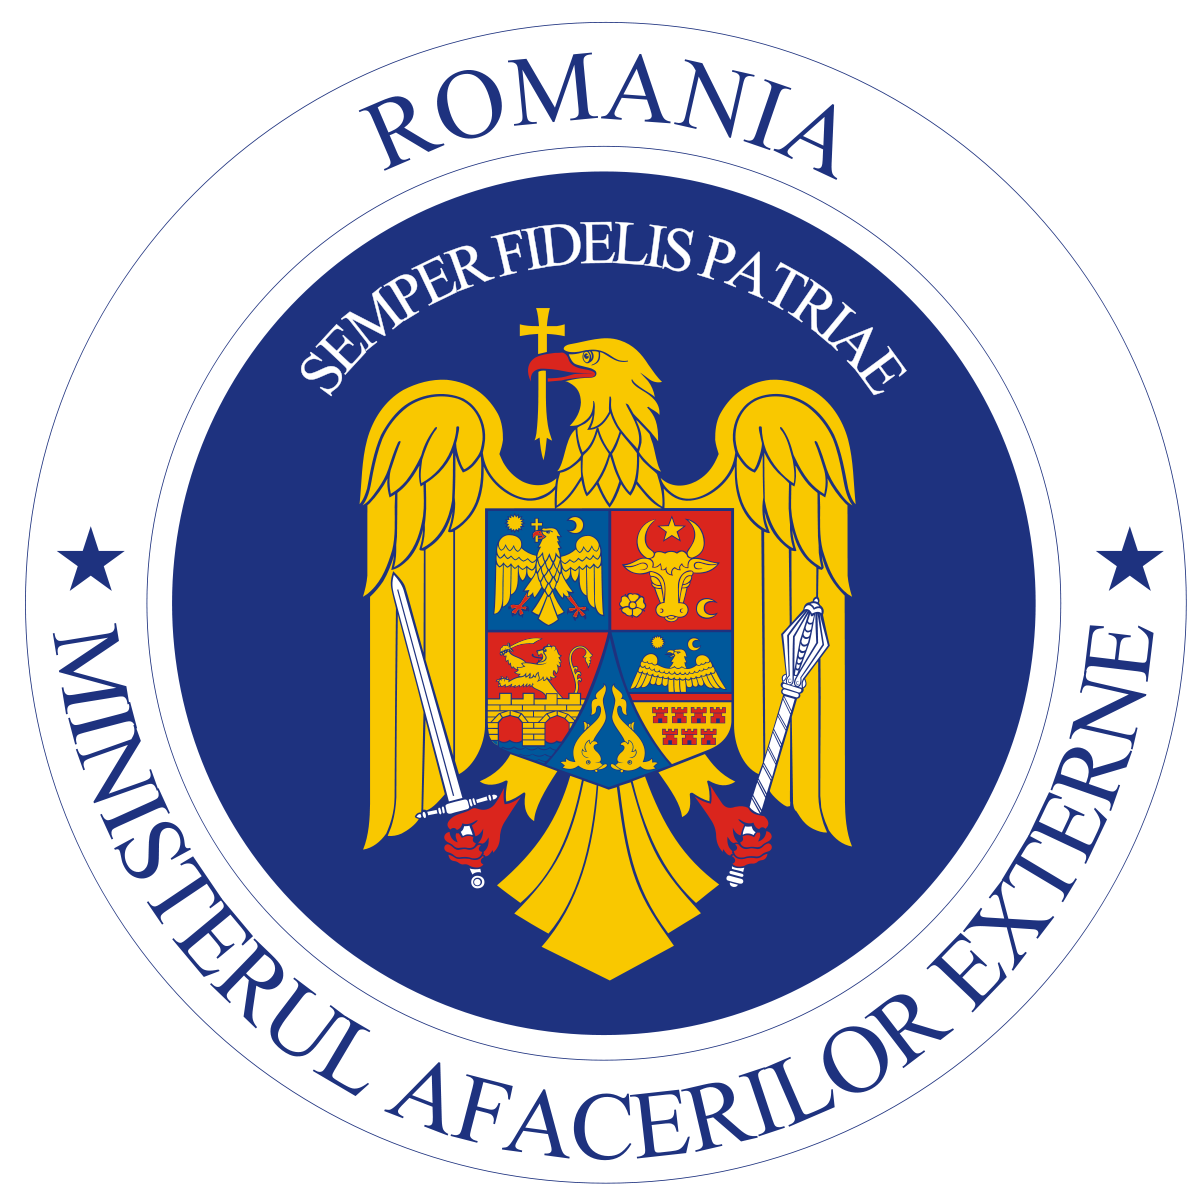 MAE: Întârzieri la frontiera dintre Bulgaria și Grecia; Ambasada României face demersuri pentru fluidizarea traficului